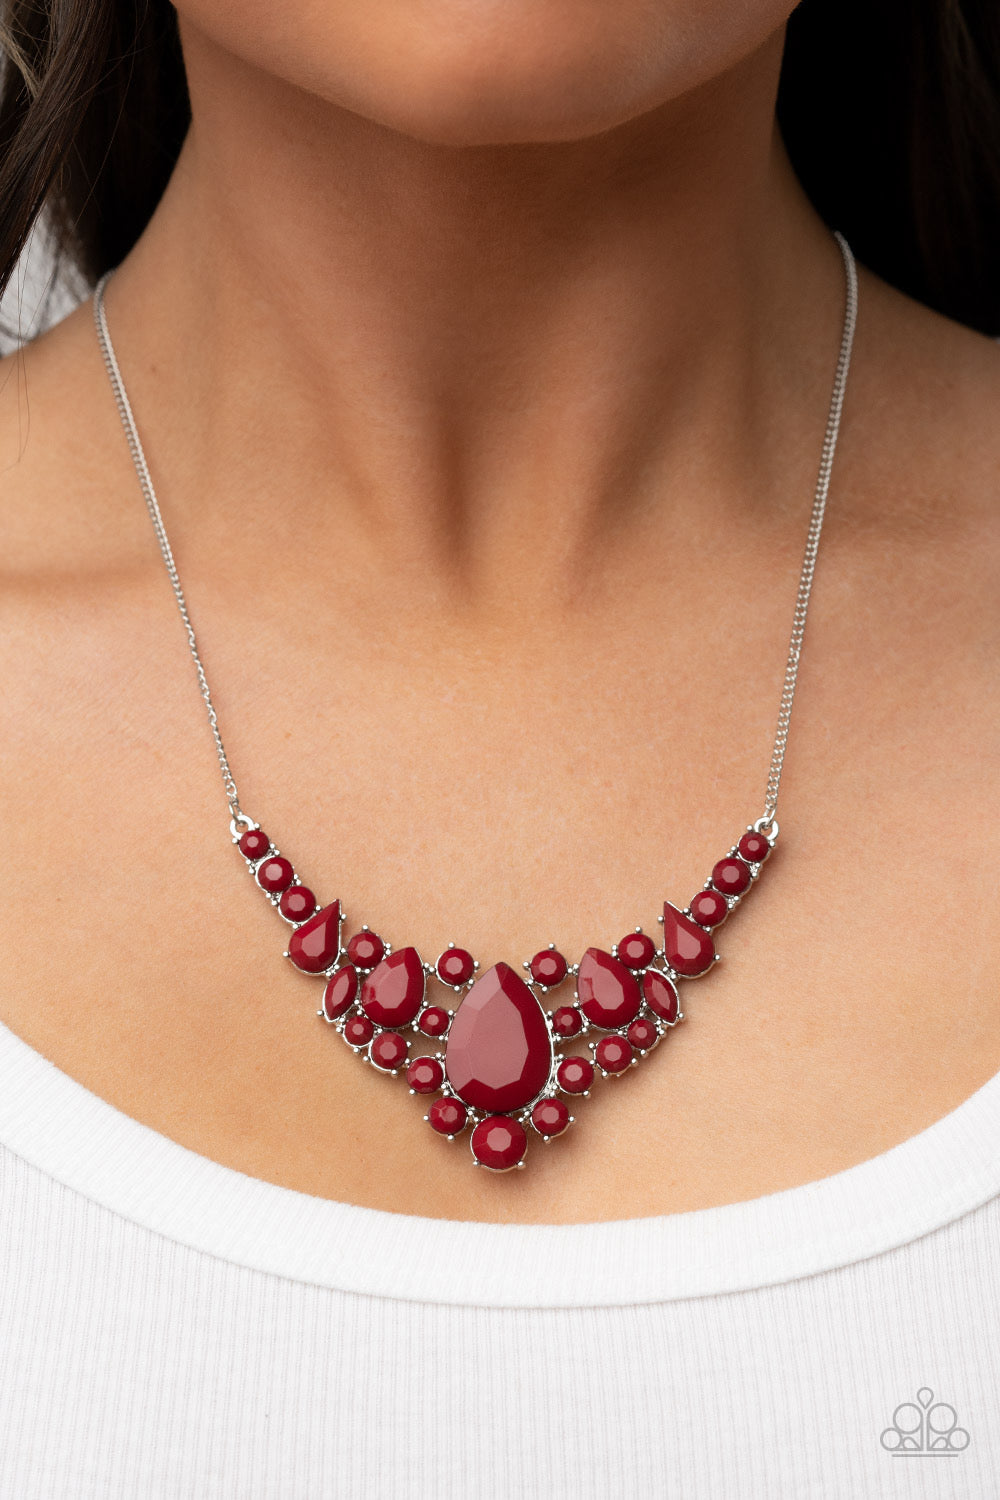 Dazzling Dahlia - Red Necklace - Paparazzi Accessories – Bedazzle Me Pretty  Mobile Fashion Boutique